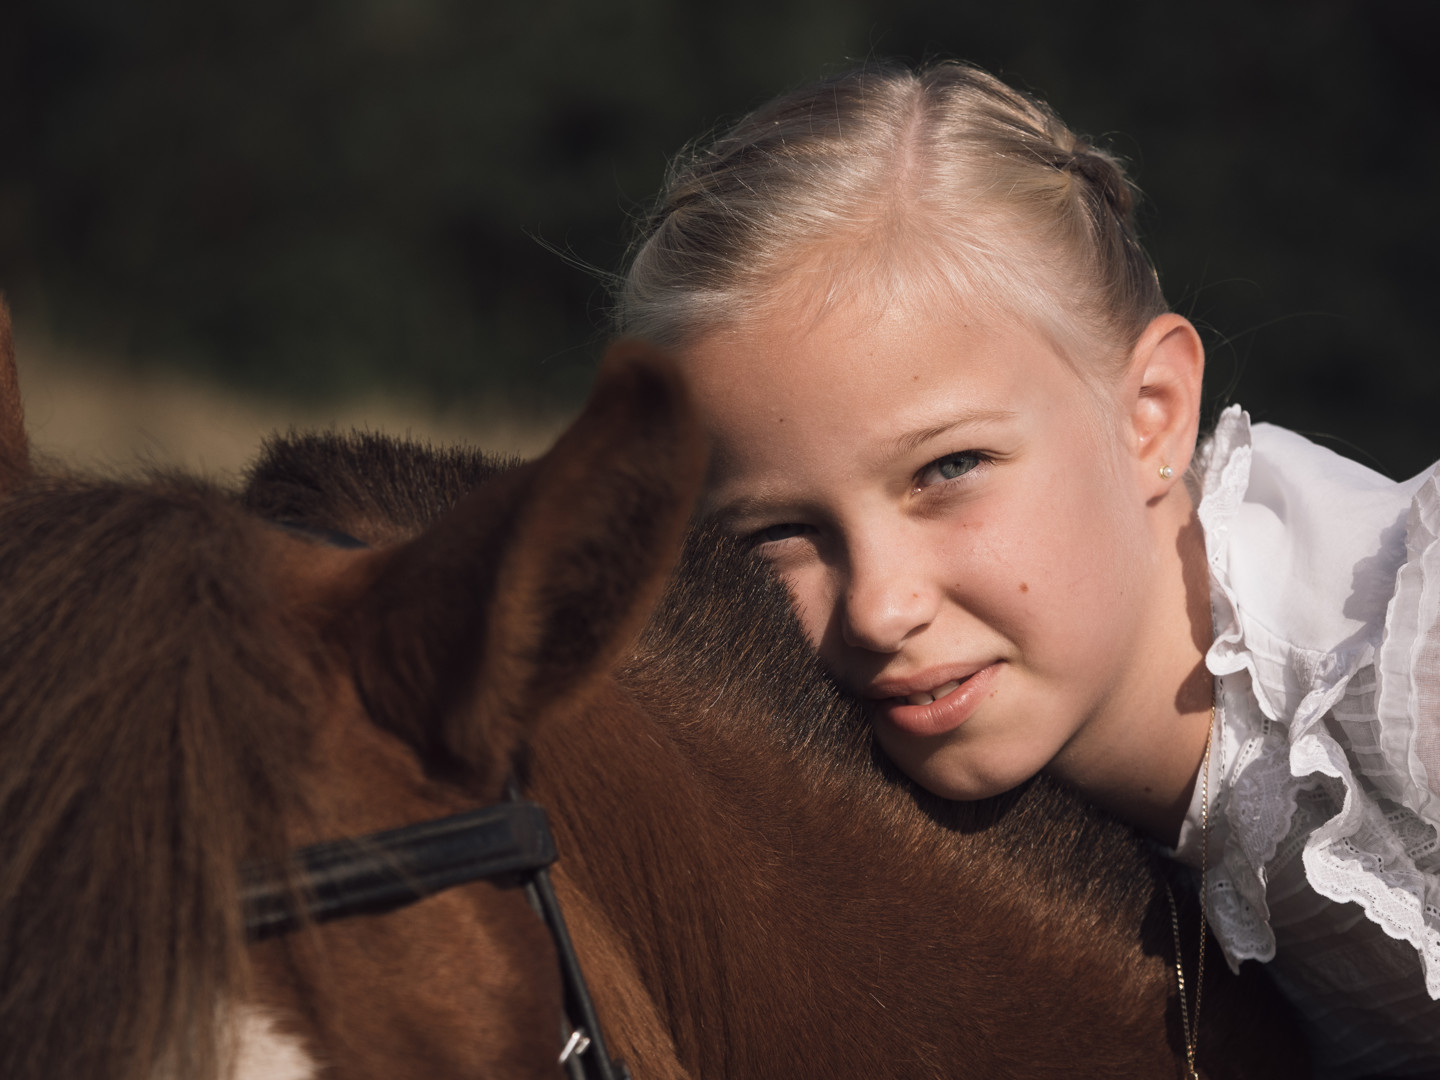 Sesión de comunión niña y caballo